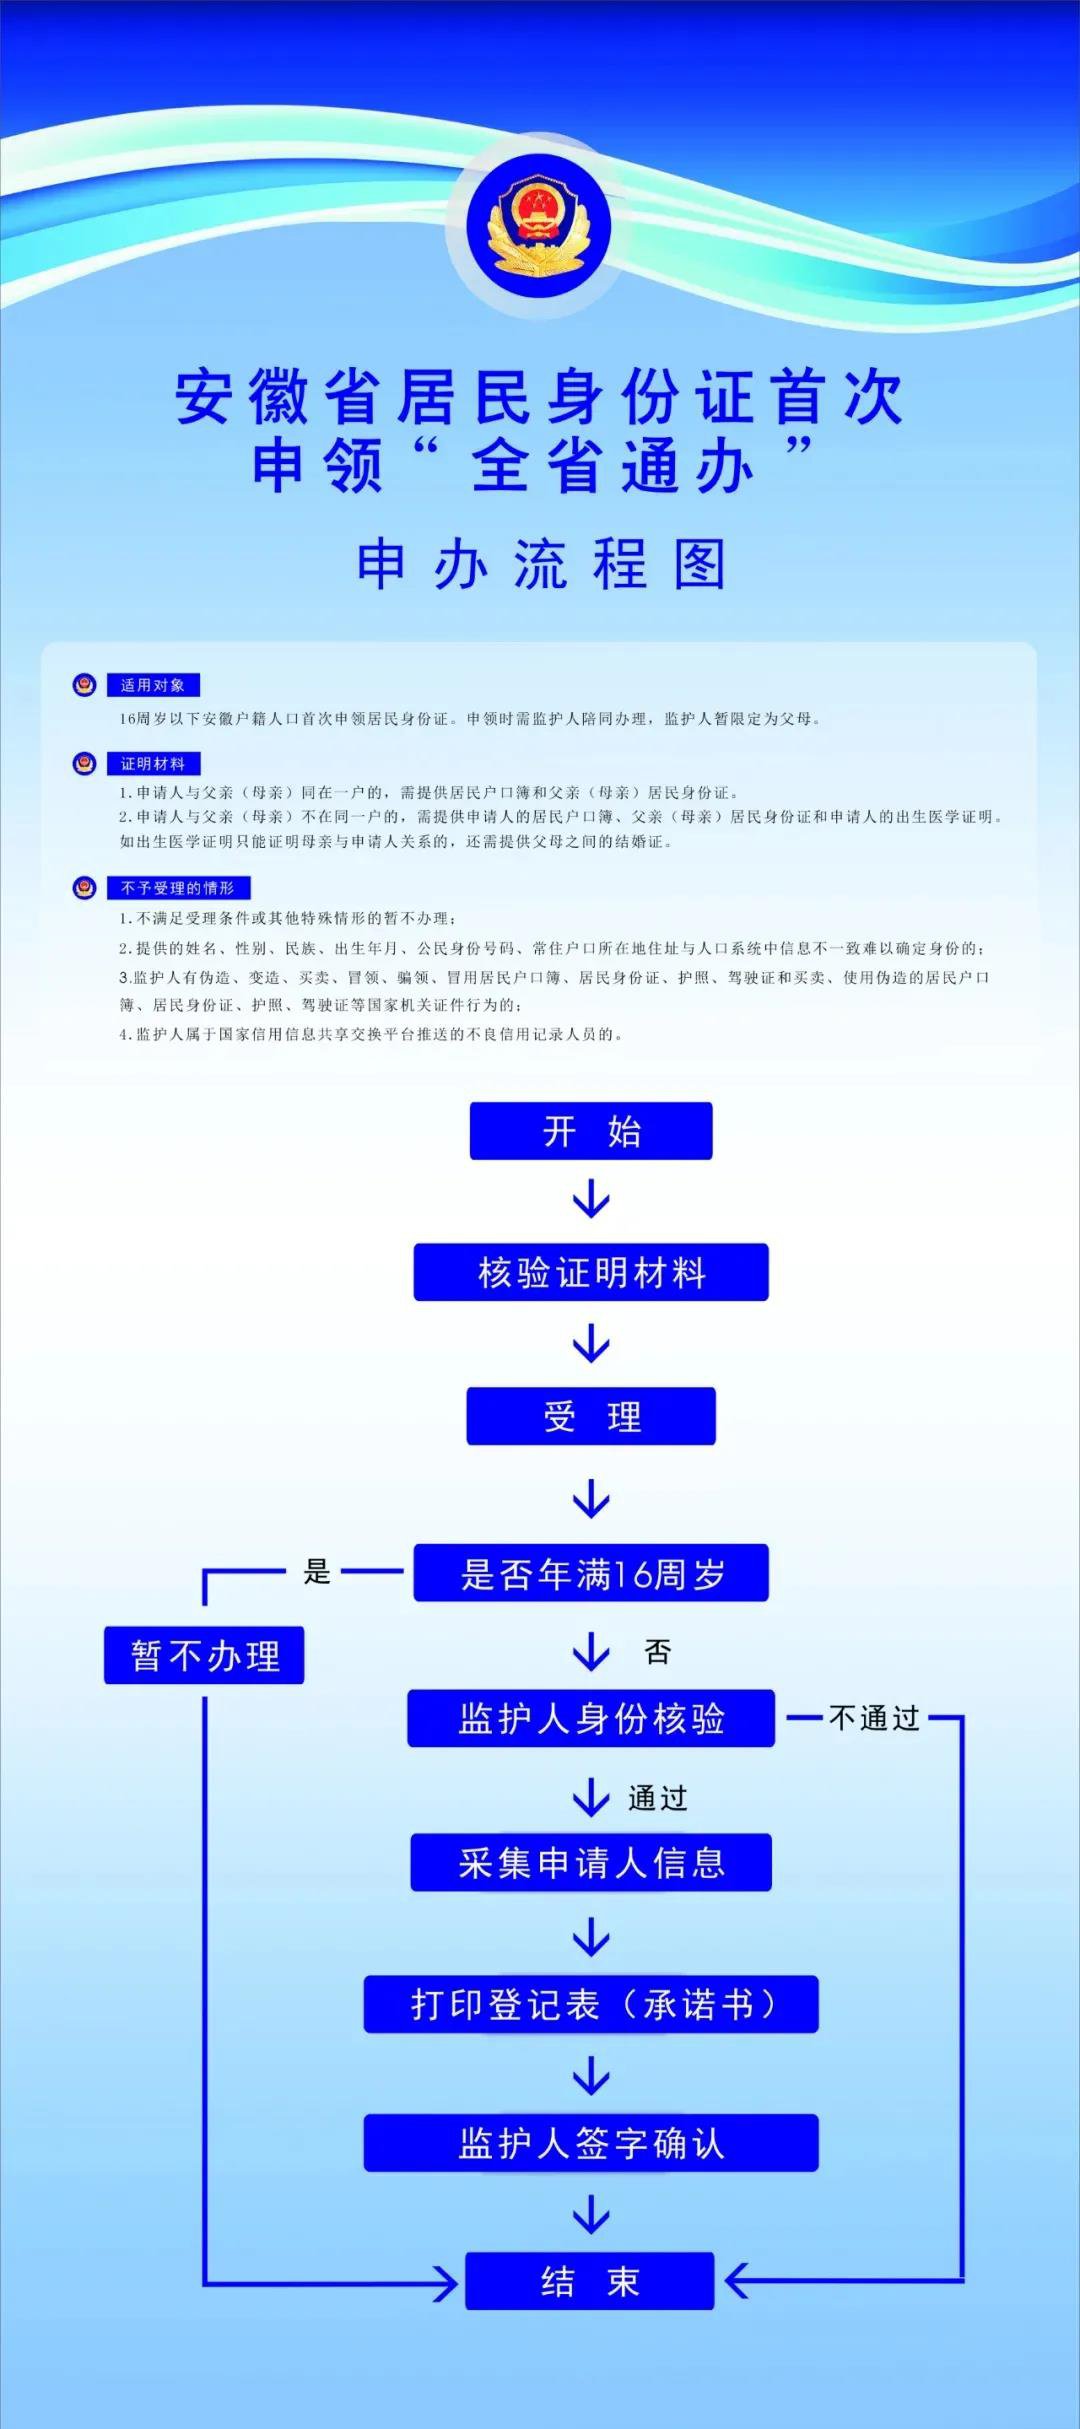 芜湖16周岁以下居民身份证首次申领办理流程